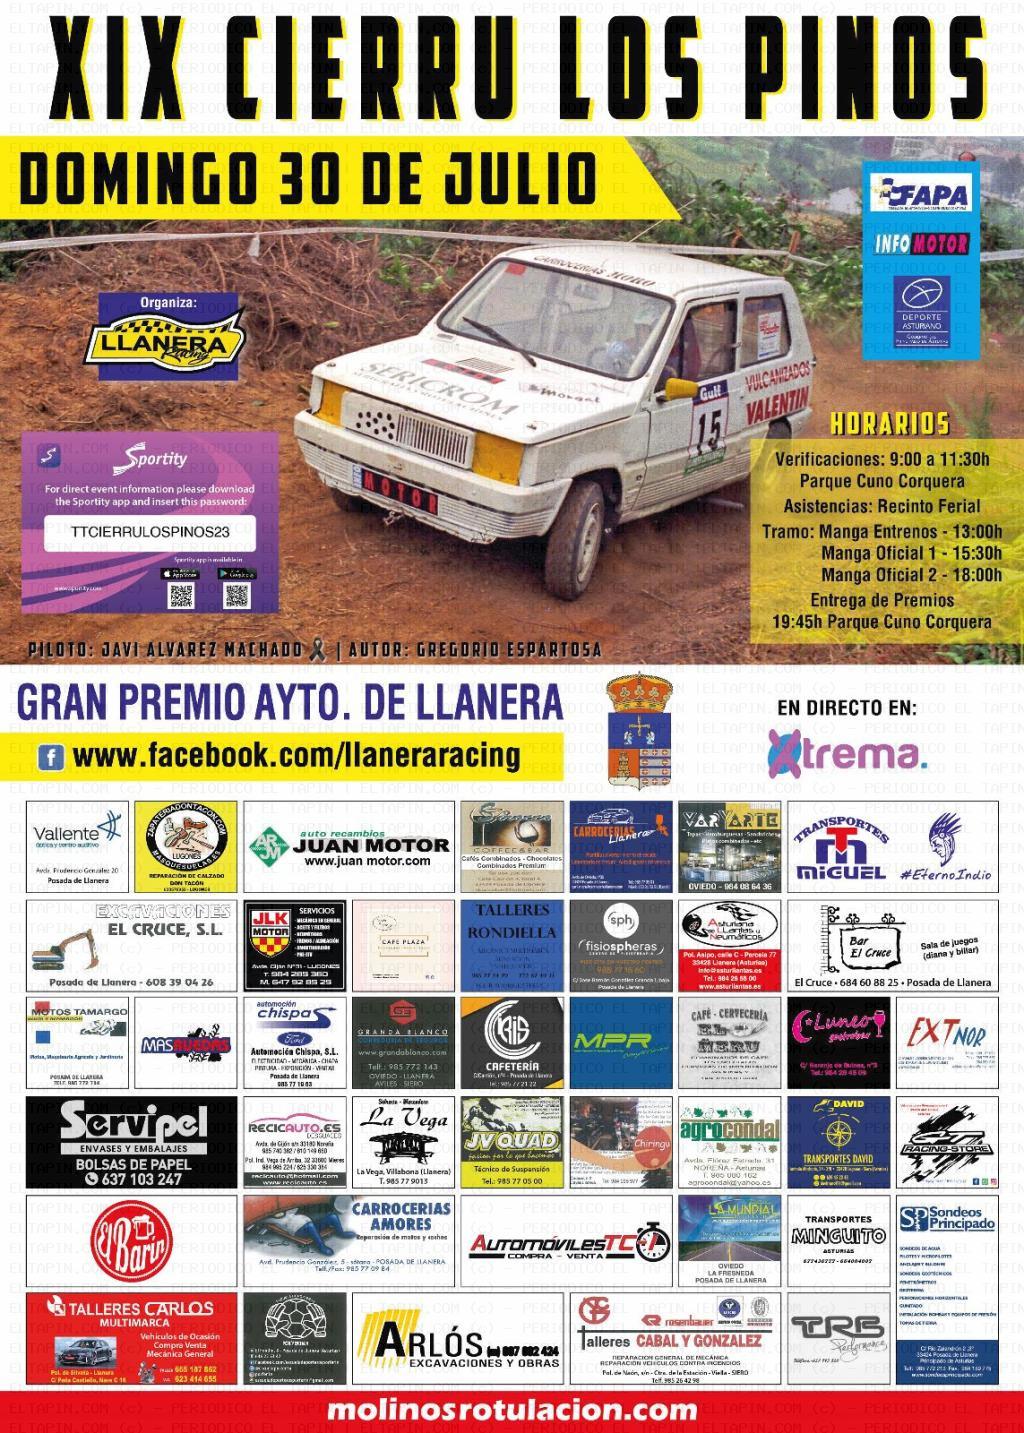 El Tapin - Llanera Racing cierra hoy miércoles 19 de julio a las 20 horas las inscripciones del Cierru Los Pinos